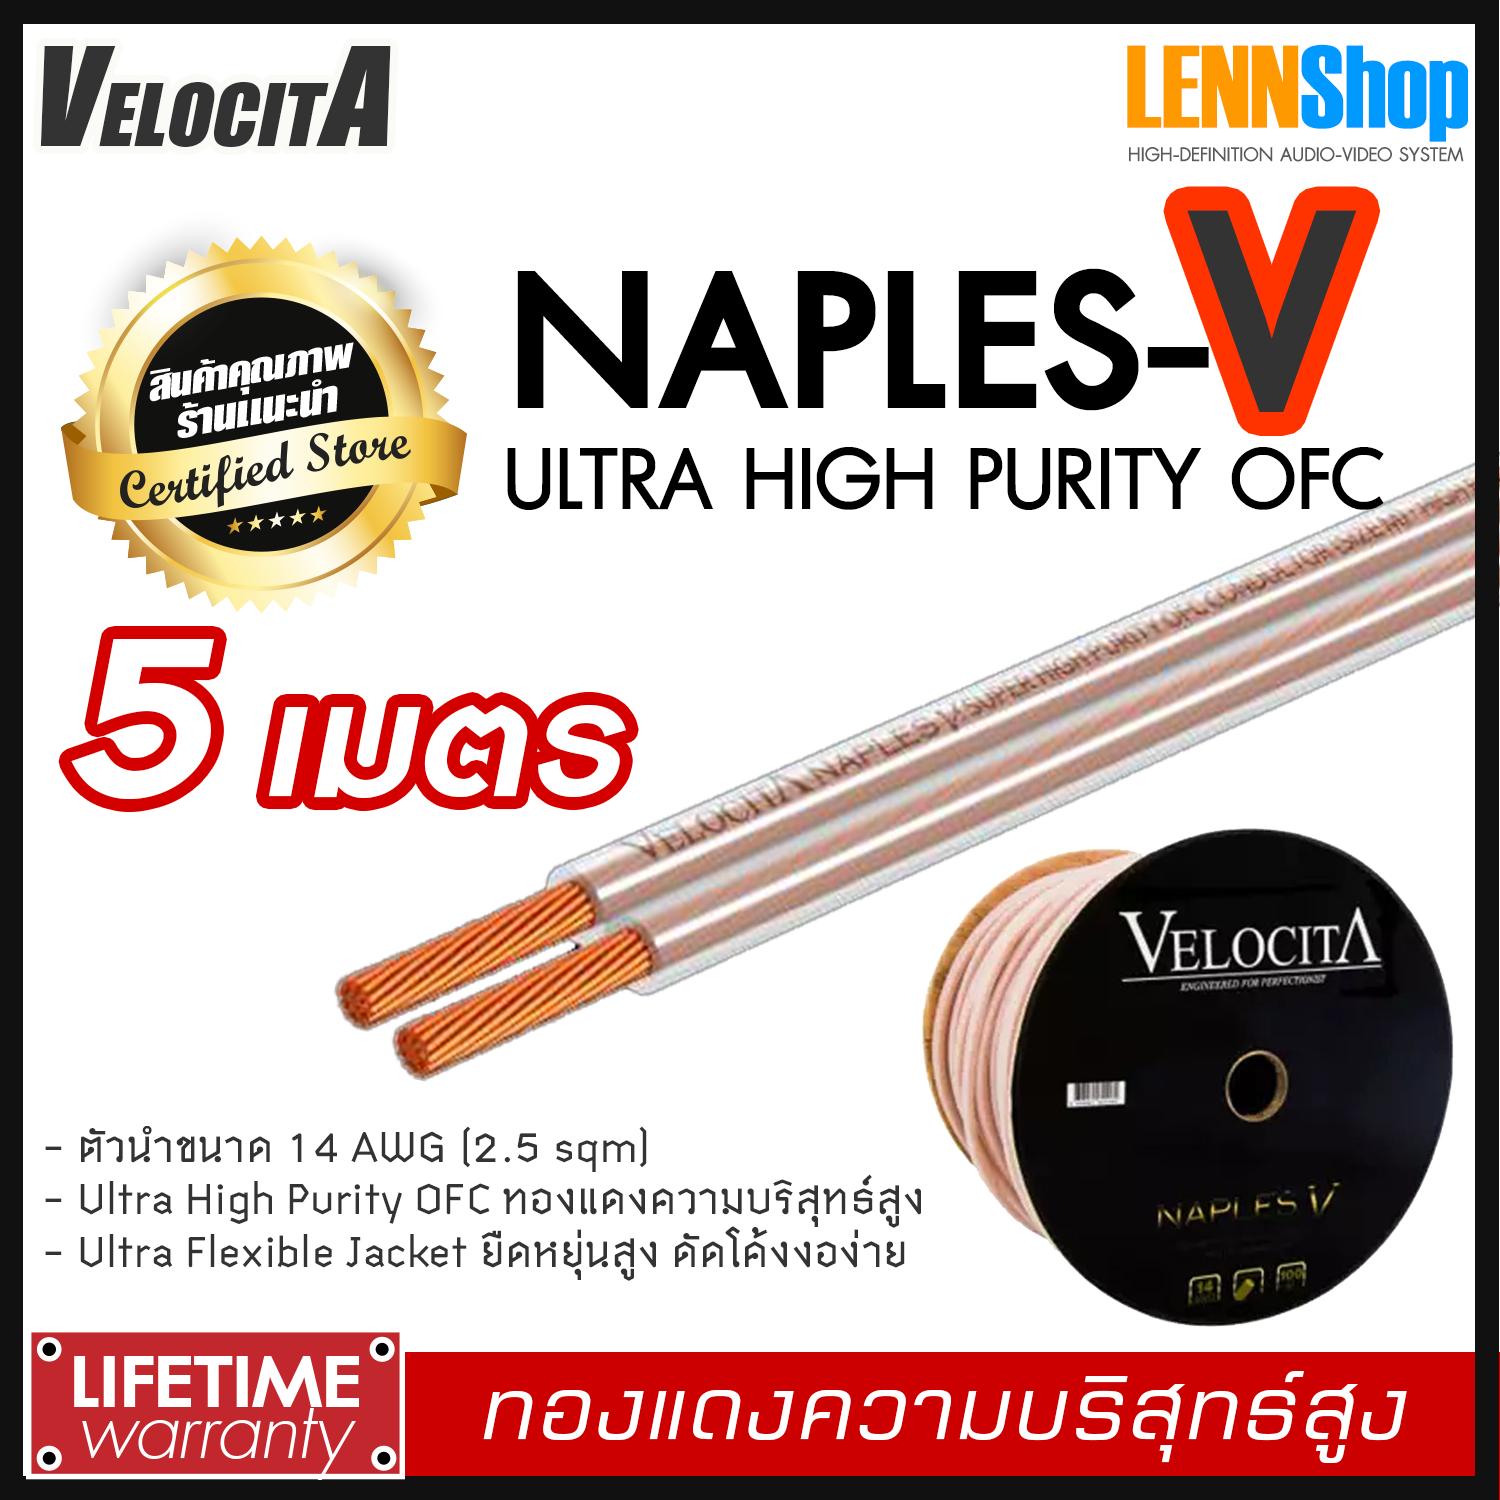 VELOCITA : NAPLES V สายลำโพง Ultra High Purity OFC ความบริสุทธ์สูง ความยาว ตั้งแต่ 1 - 100 เมตร เลือกได้หลายขนาด สินค้าของแท้ 100% จากตัวแทนจำหน่ายอย่างเป็นทางการ จำหน่ายโดย LENNSHOP / Velocita Naple V / naple V สี 5m สี 5m